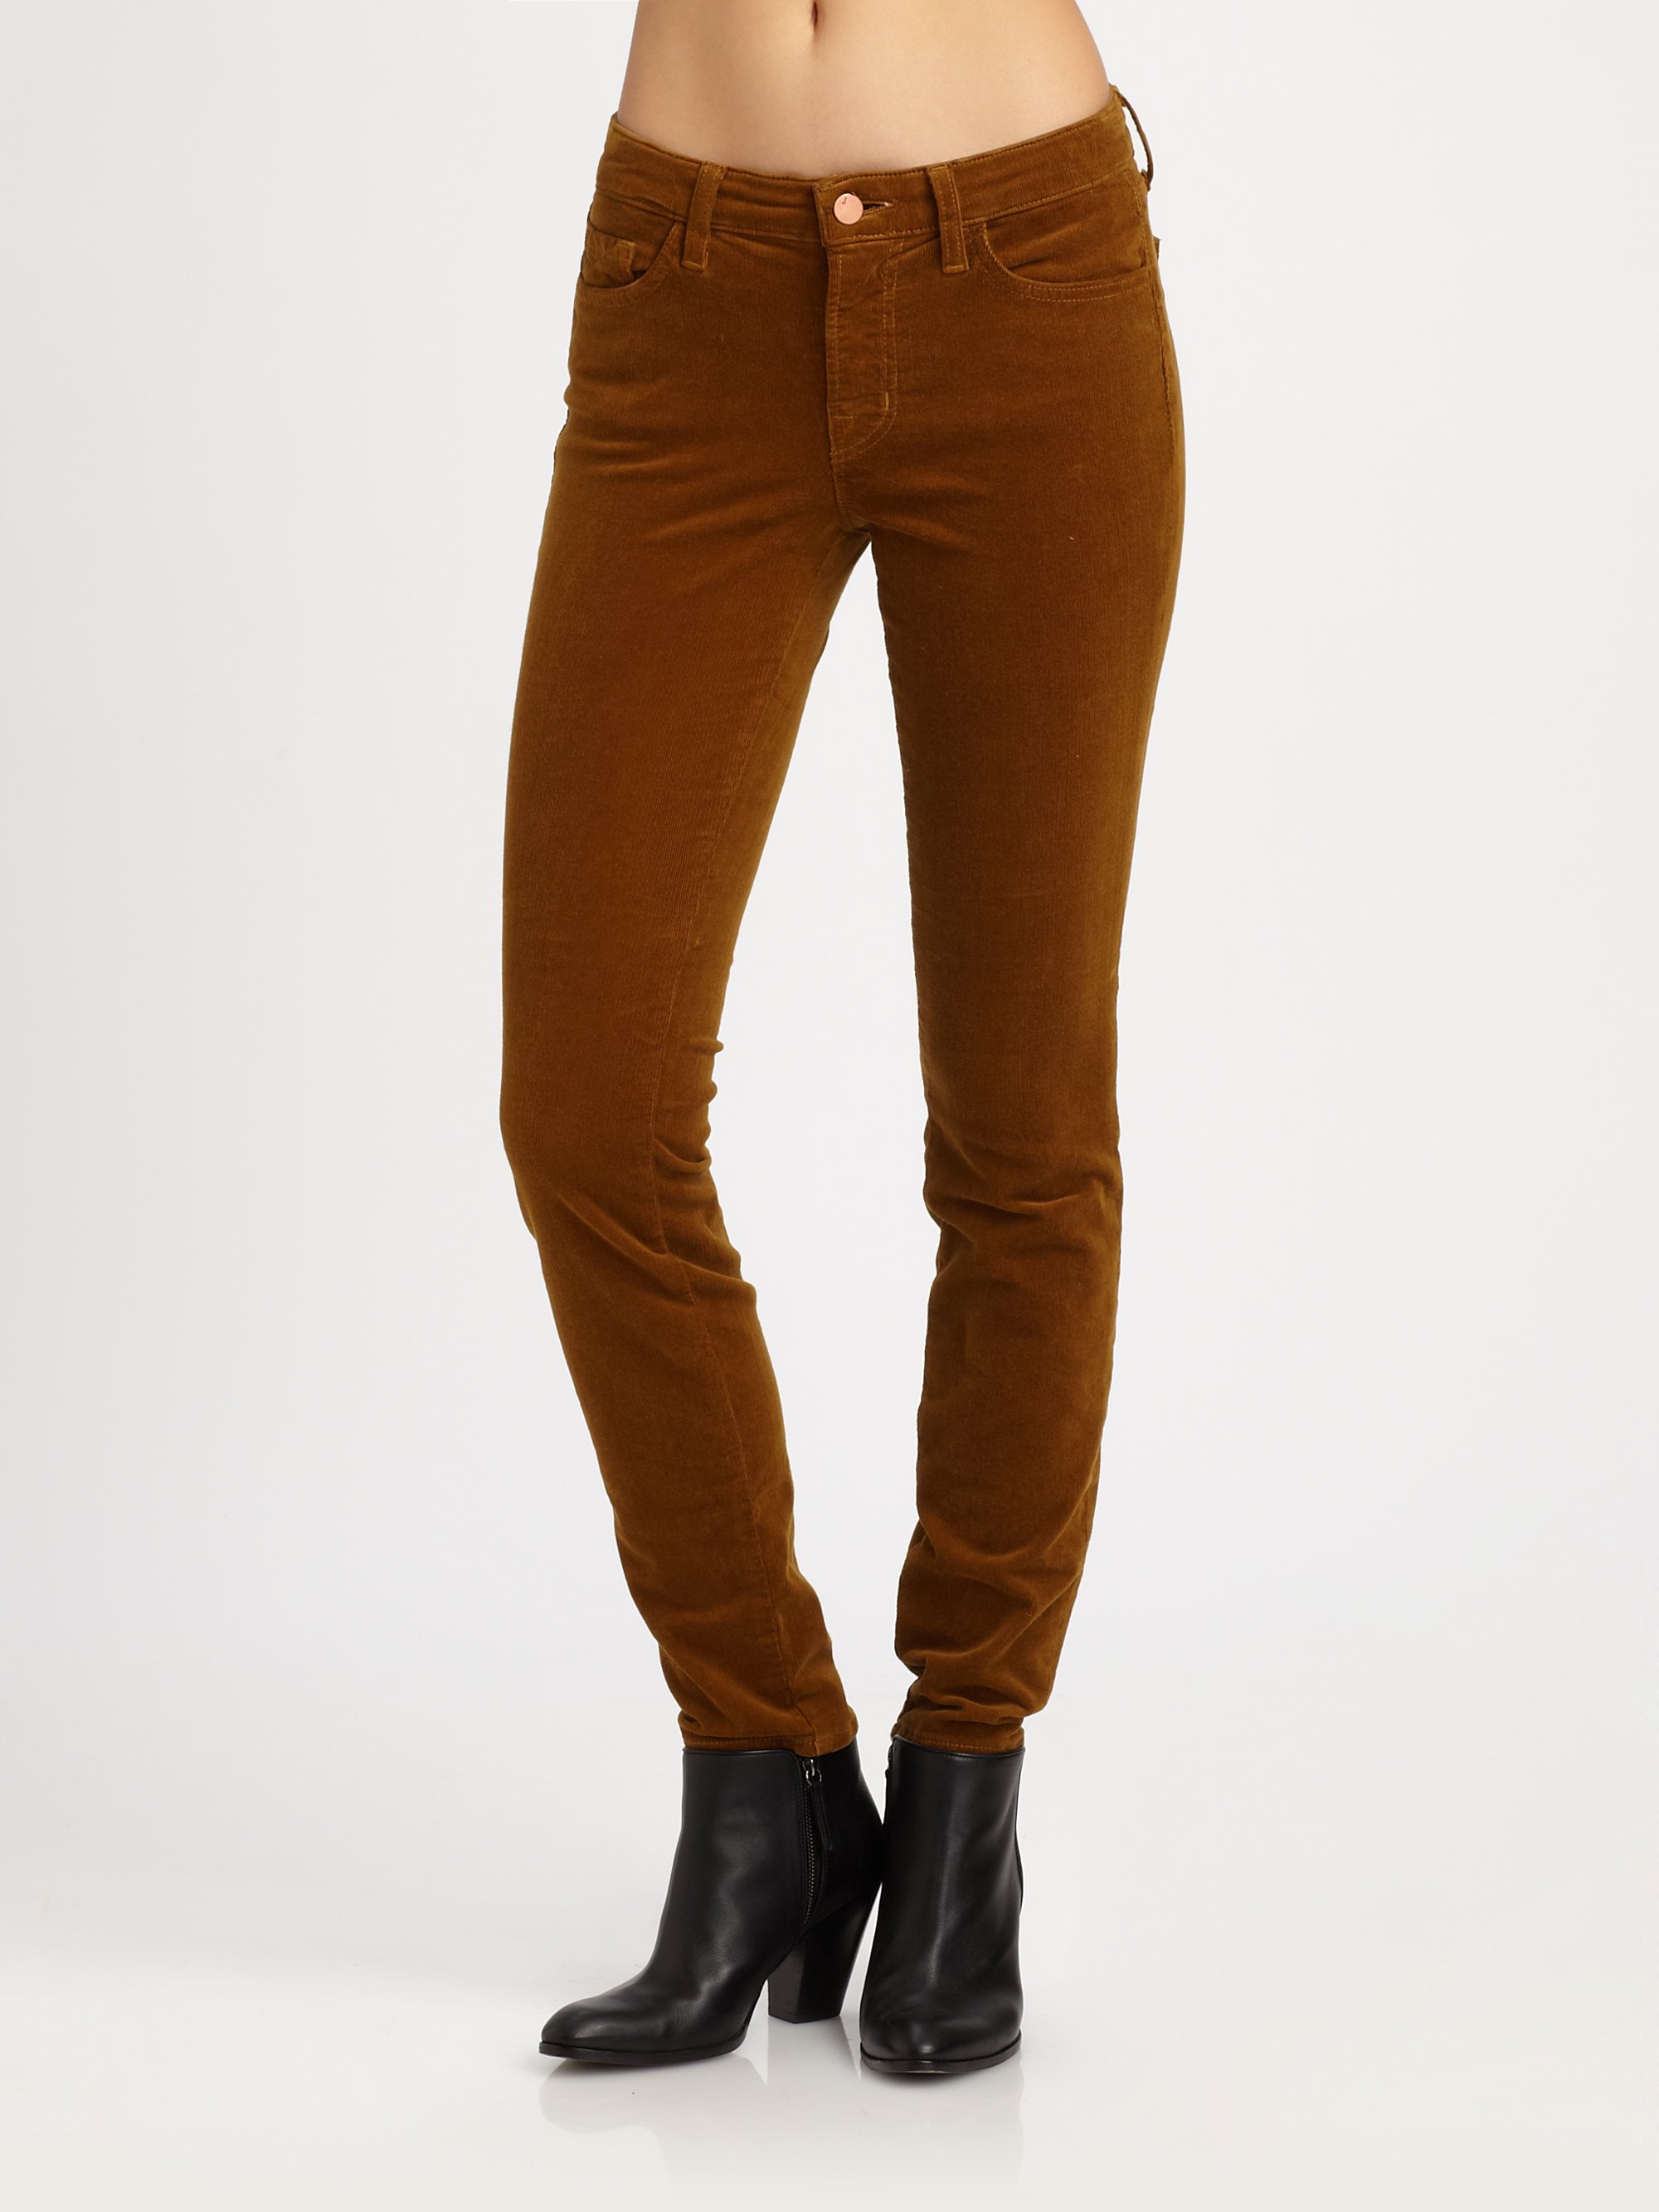 Lyst - J brand Corduroy Skinny Jeans in Brown